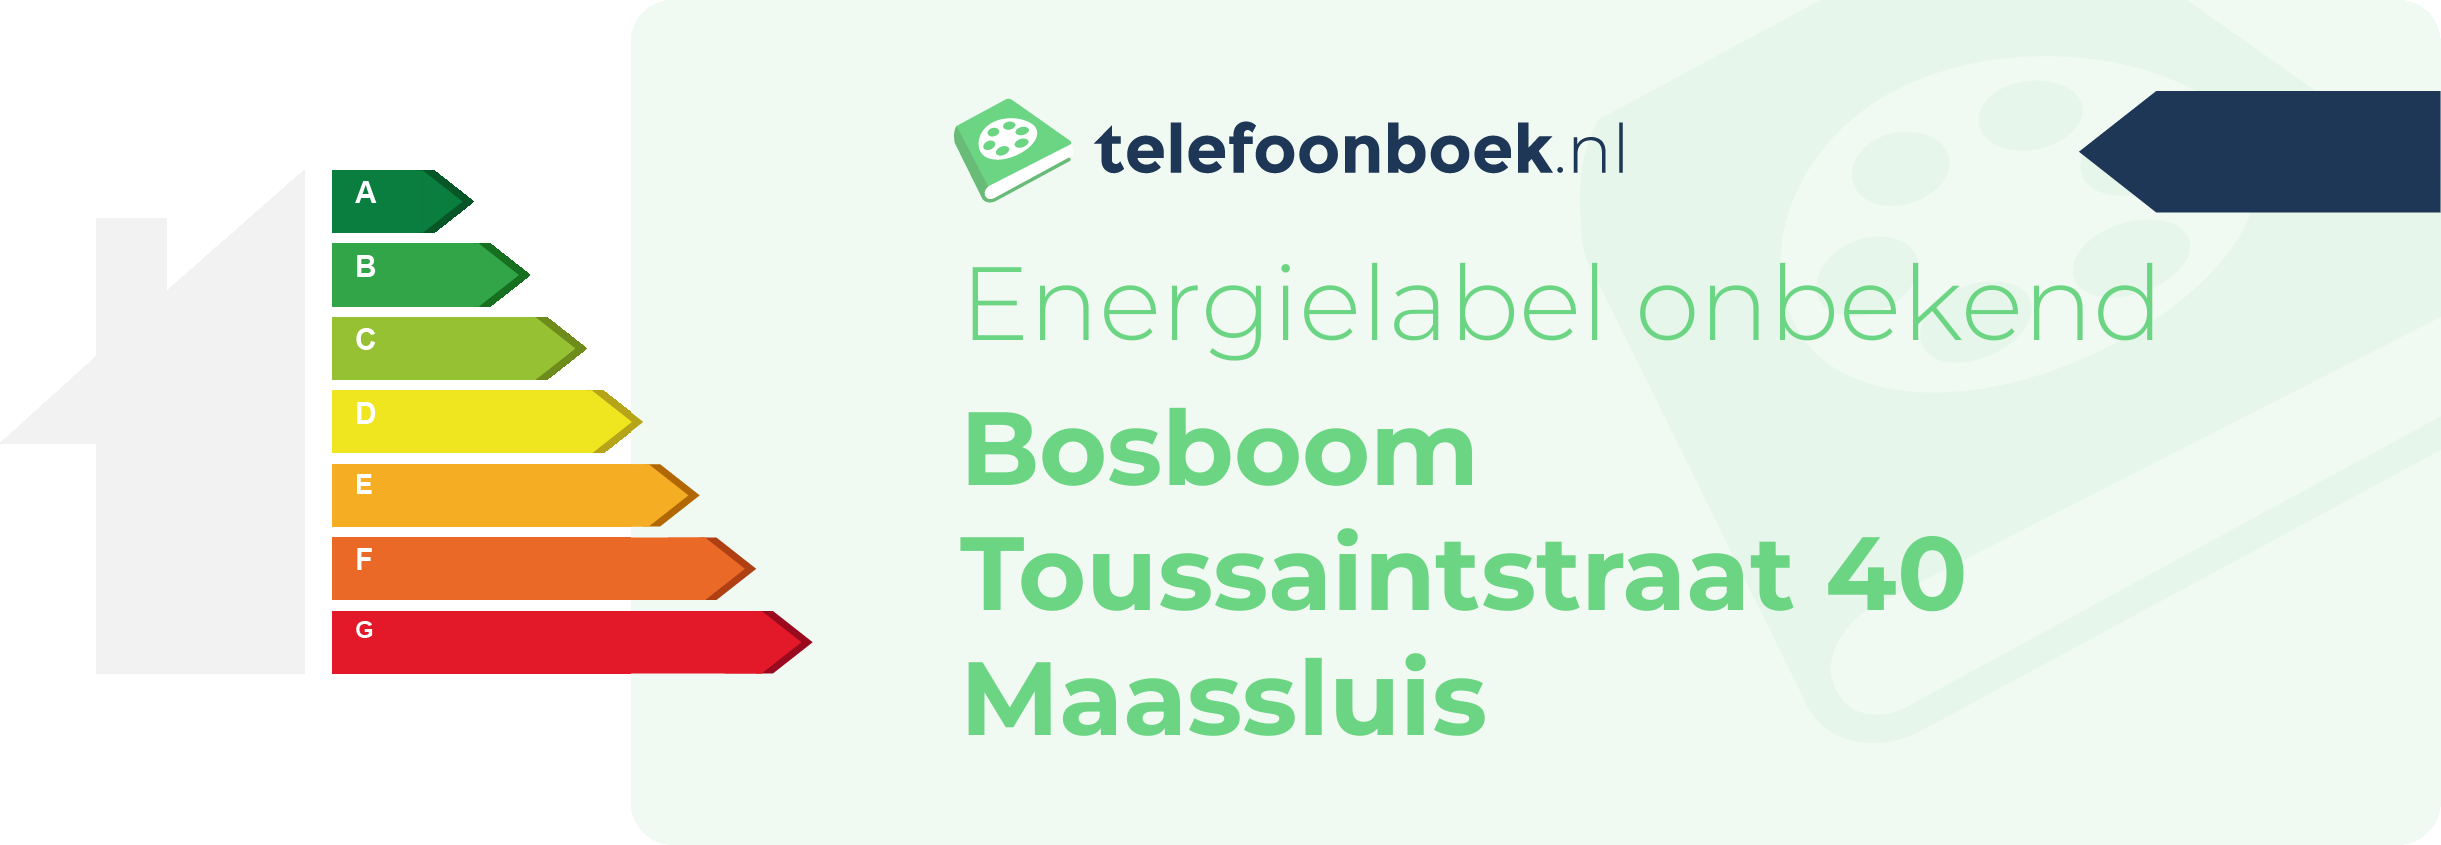 Energielabel Bosboom Toussaintstraat 40 Maassluis